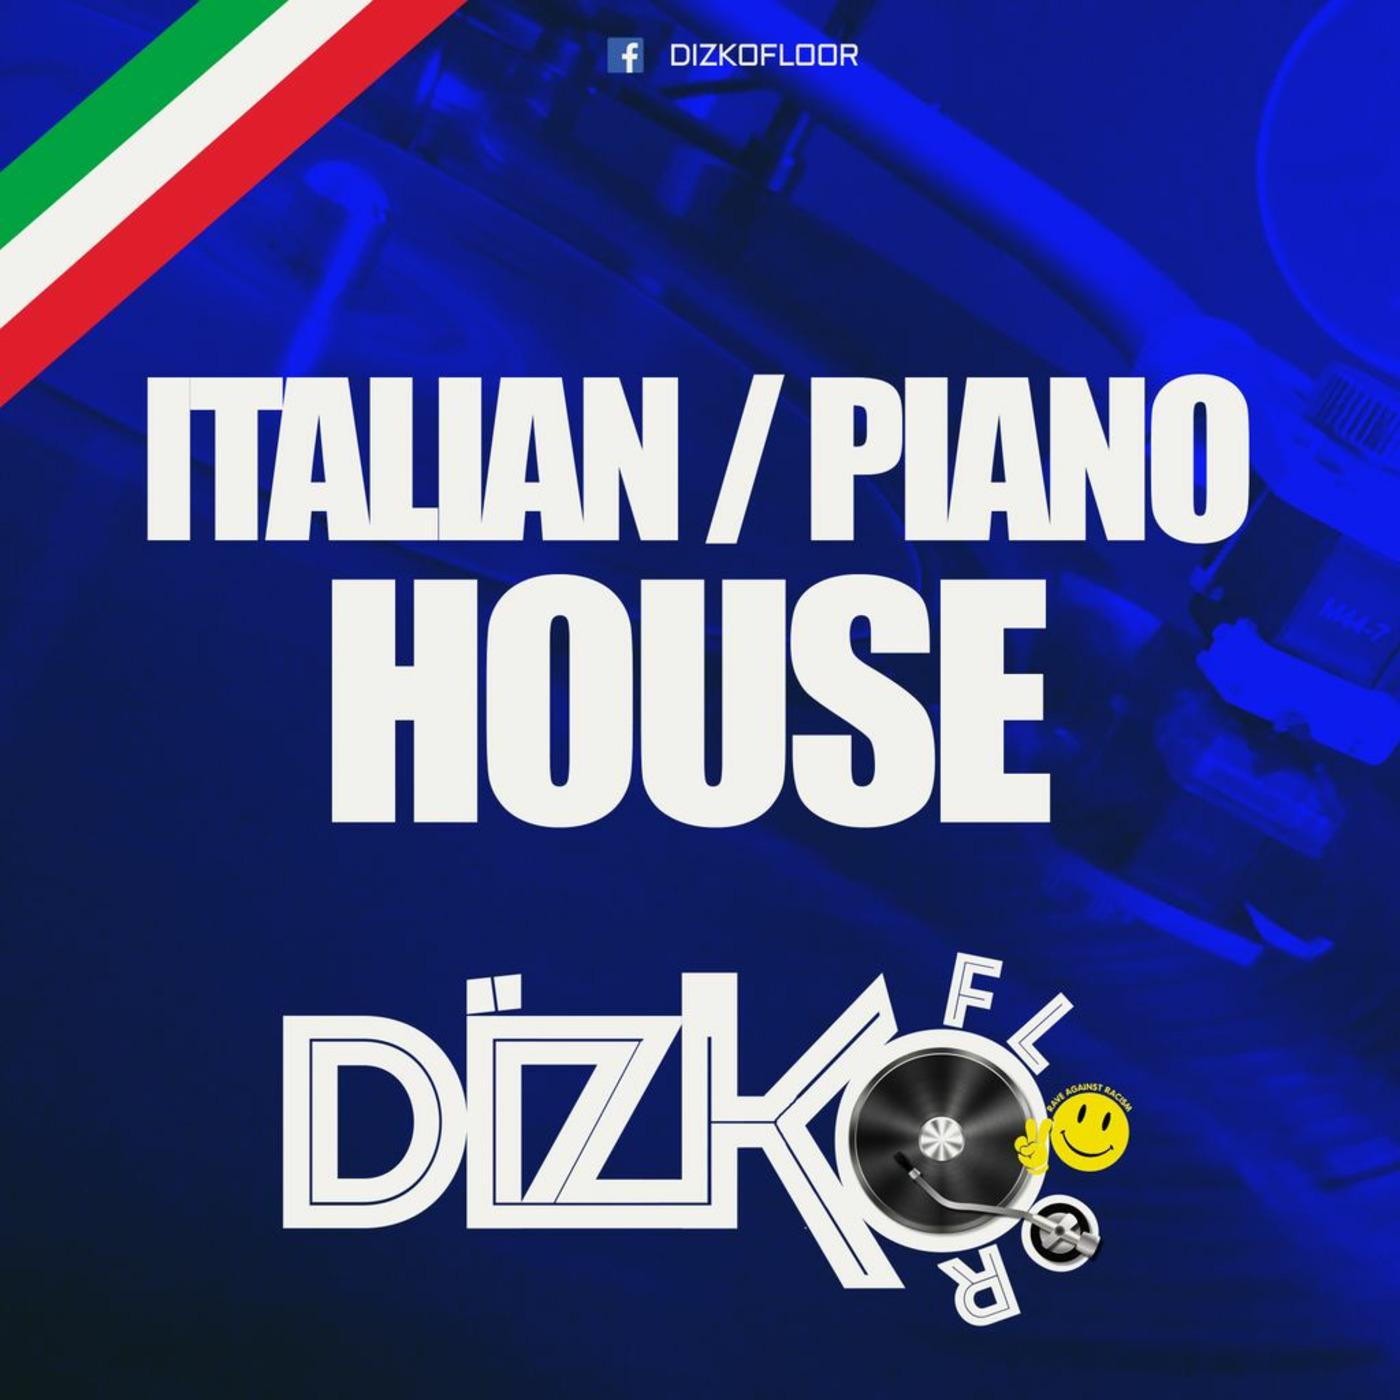 Boxing Day Italian Piano House